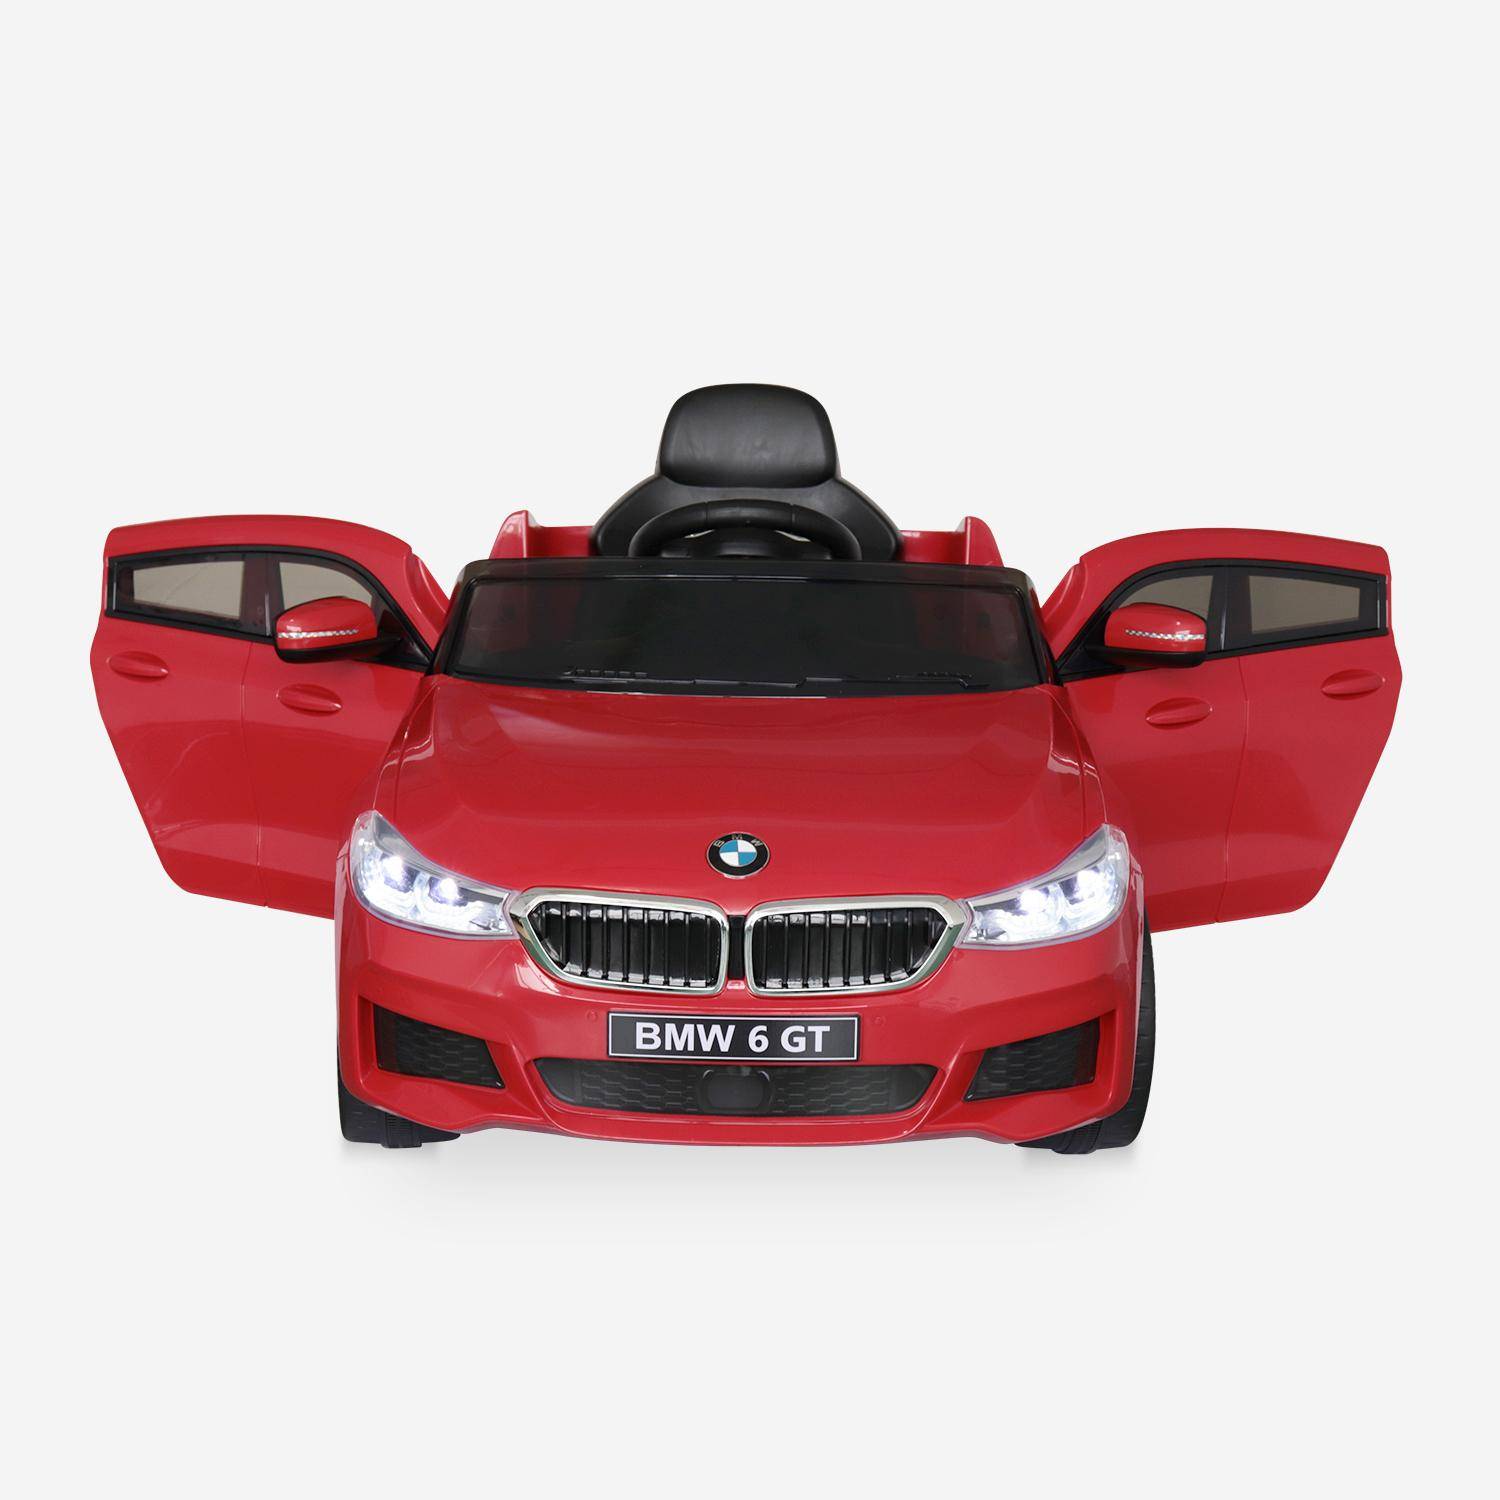 BMW Serie 6GT Gran Turismo rossa, macchina elettrica per bambini 12V 4 Ah, 1 posto, con autoradio e telecomando Photo4